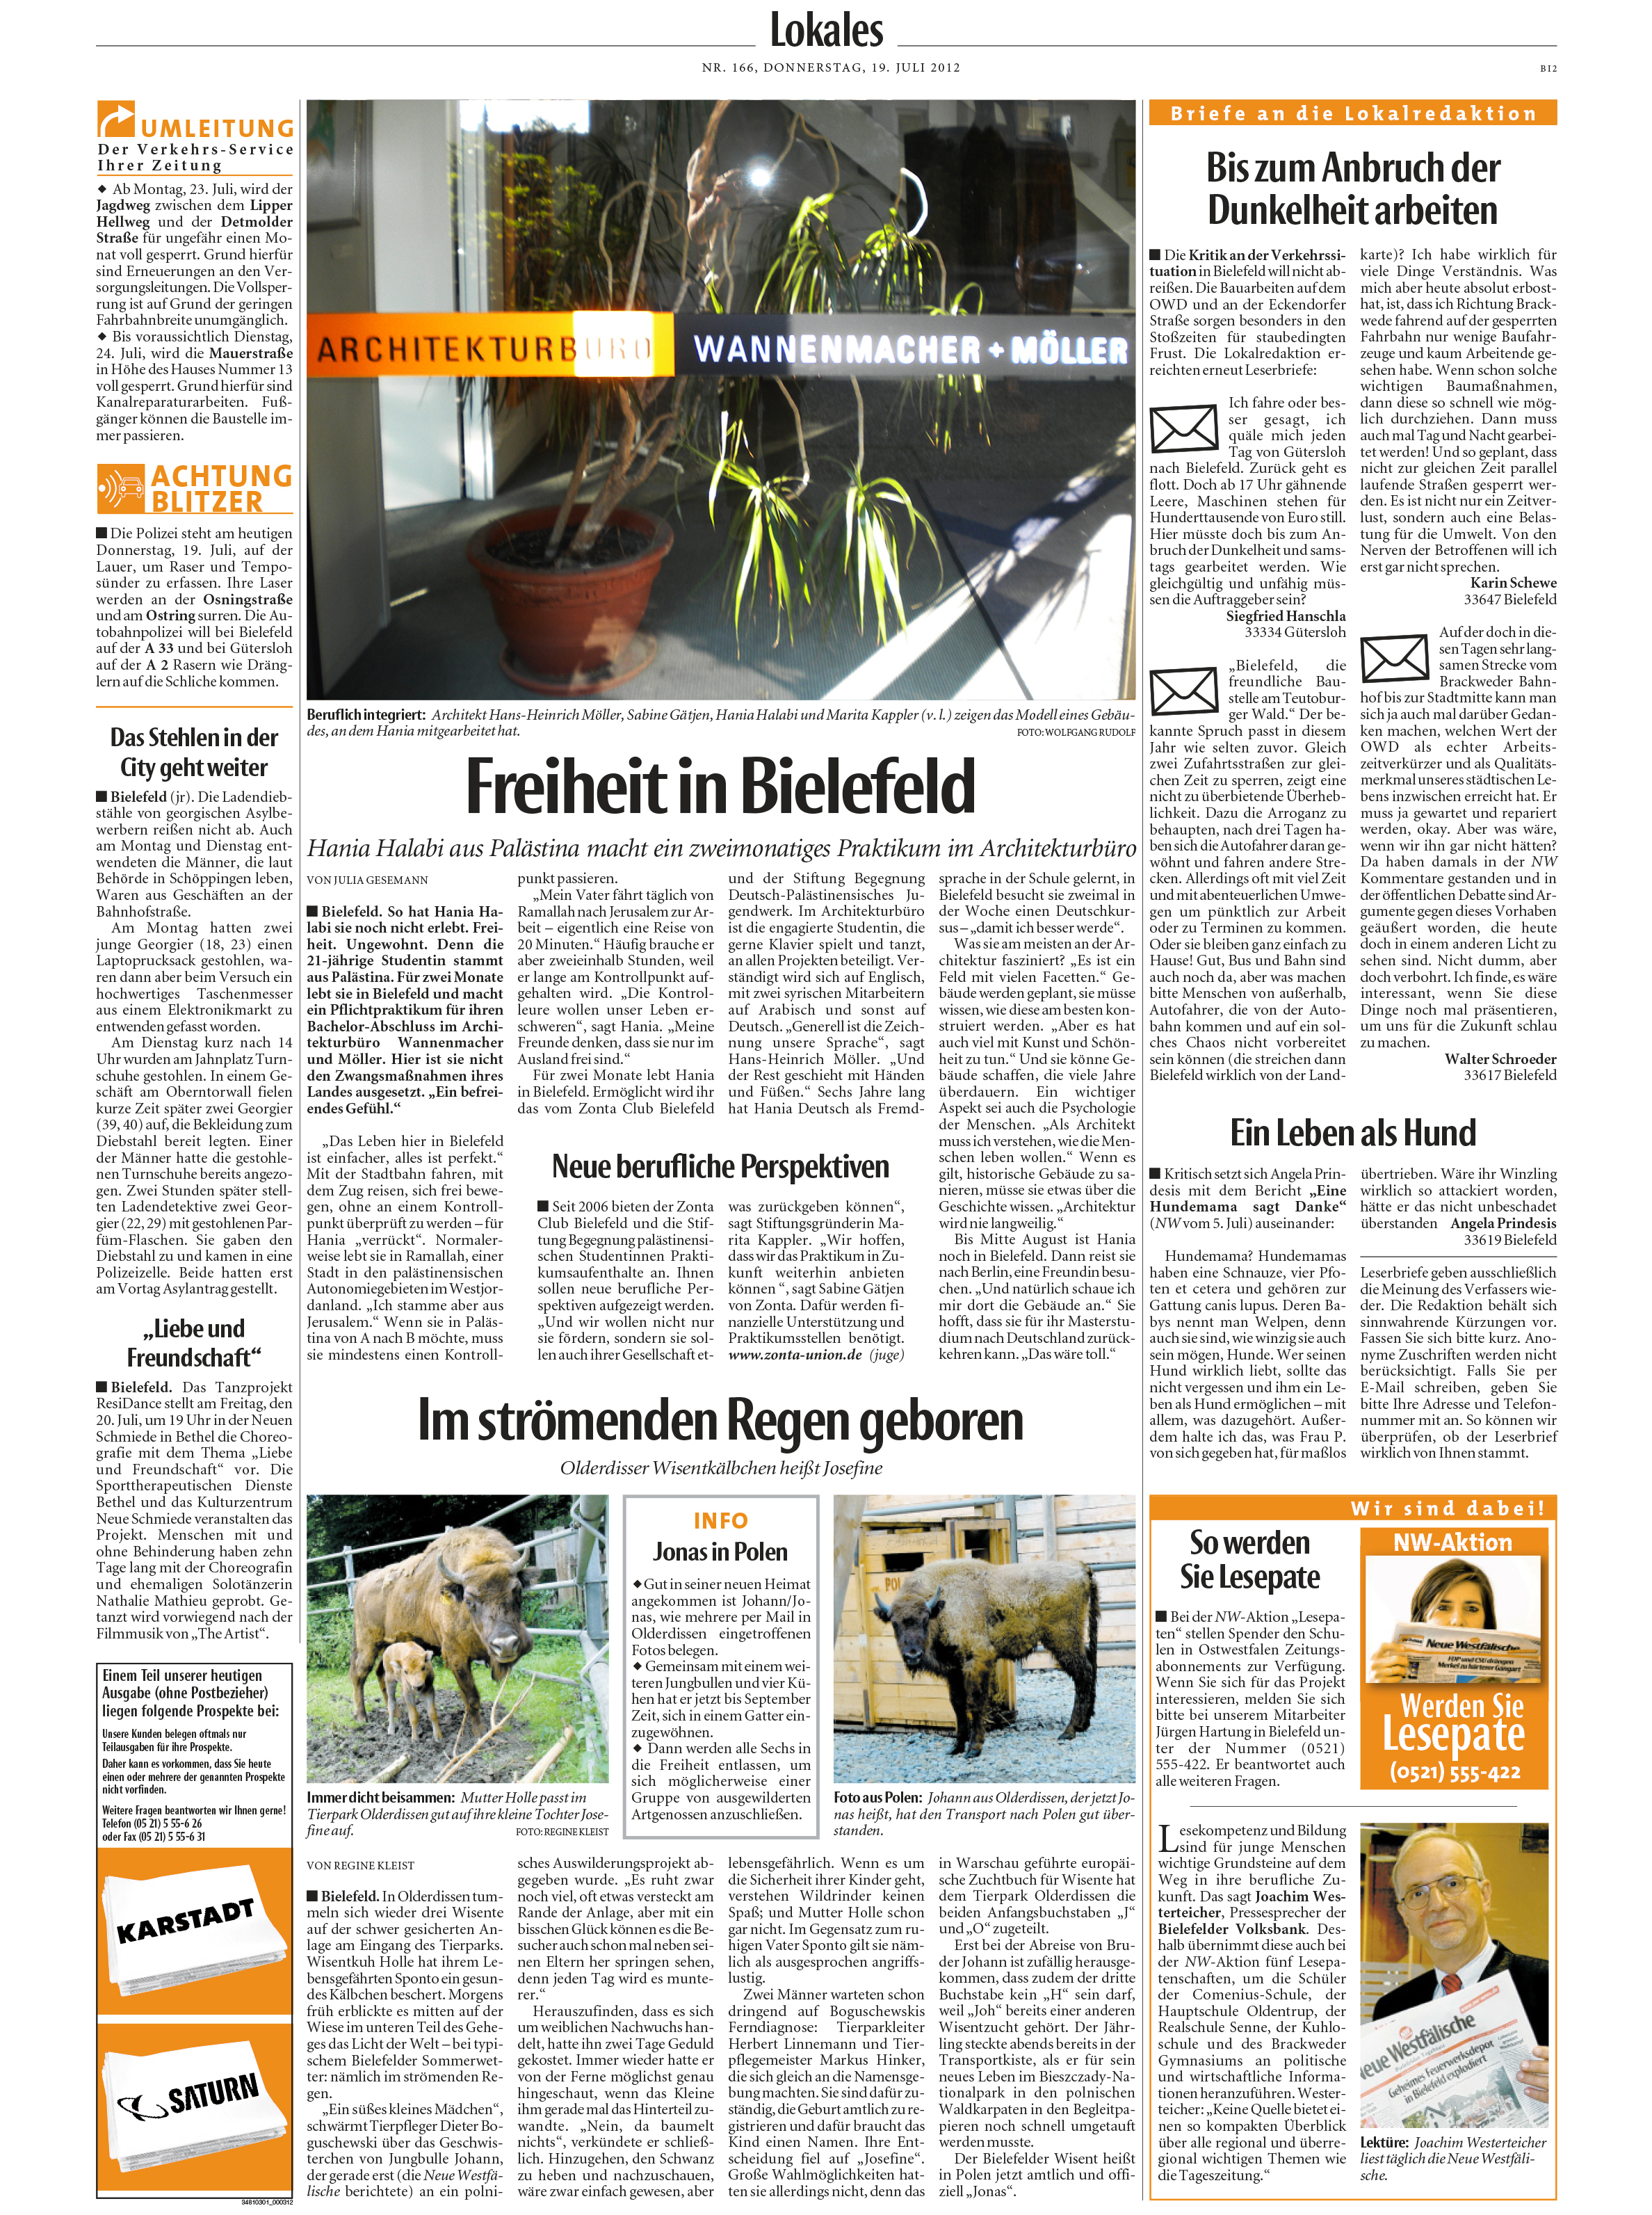 Stadtzeitung_Hania_2012.jpg